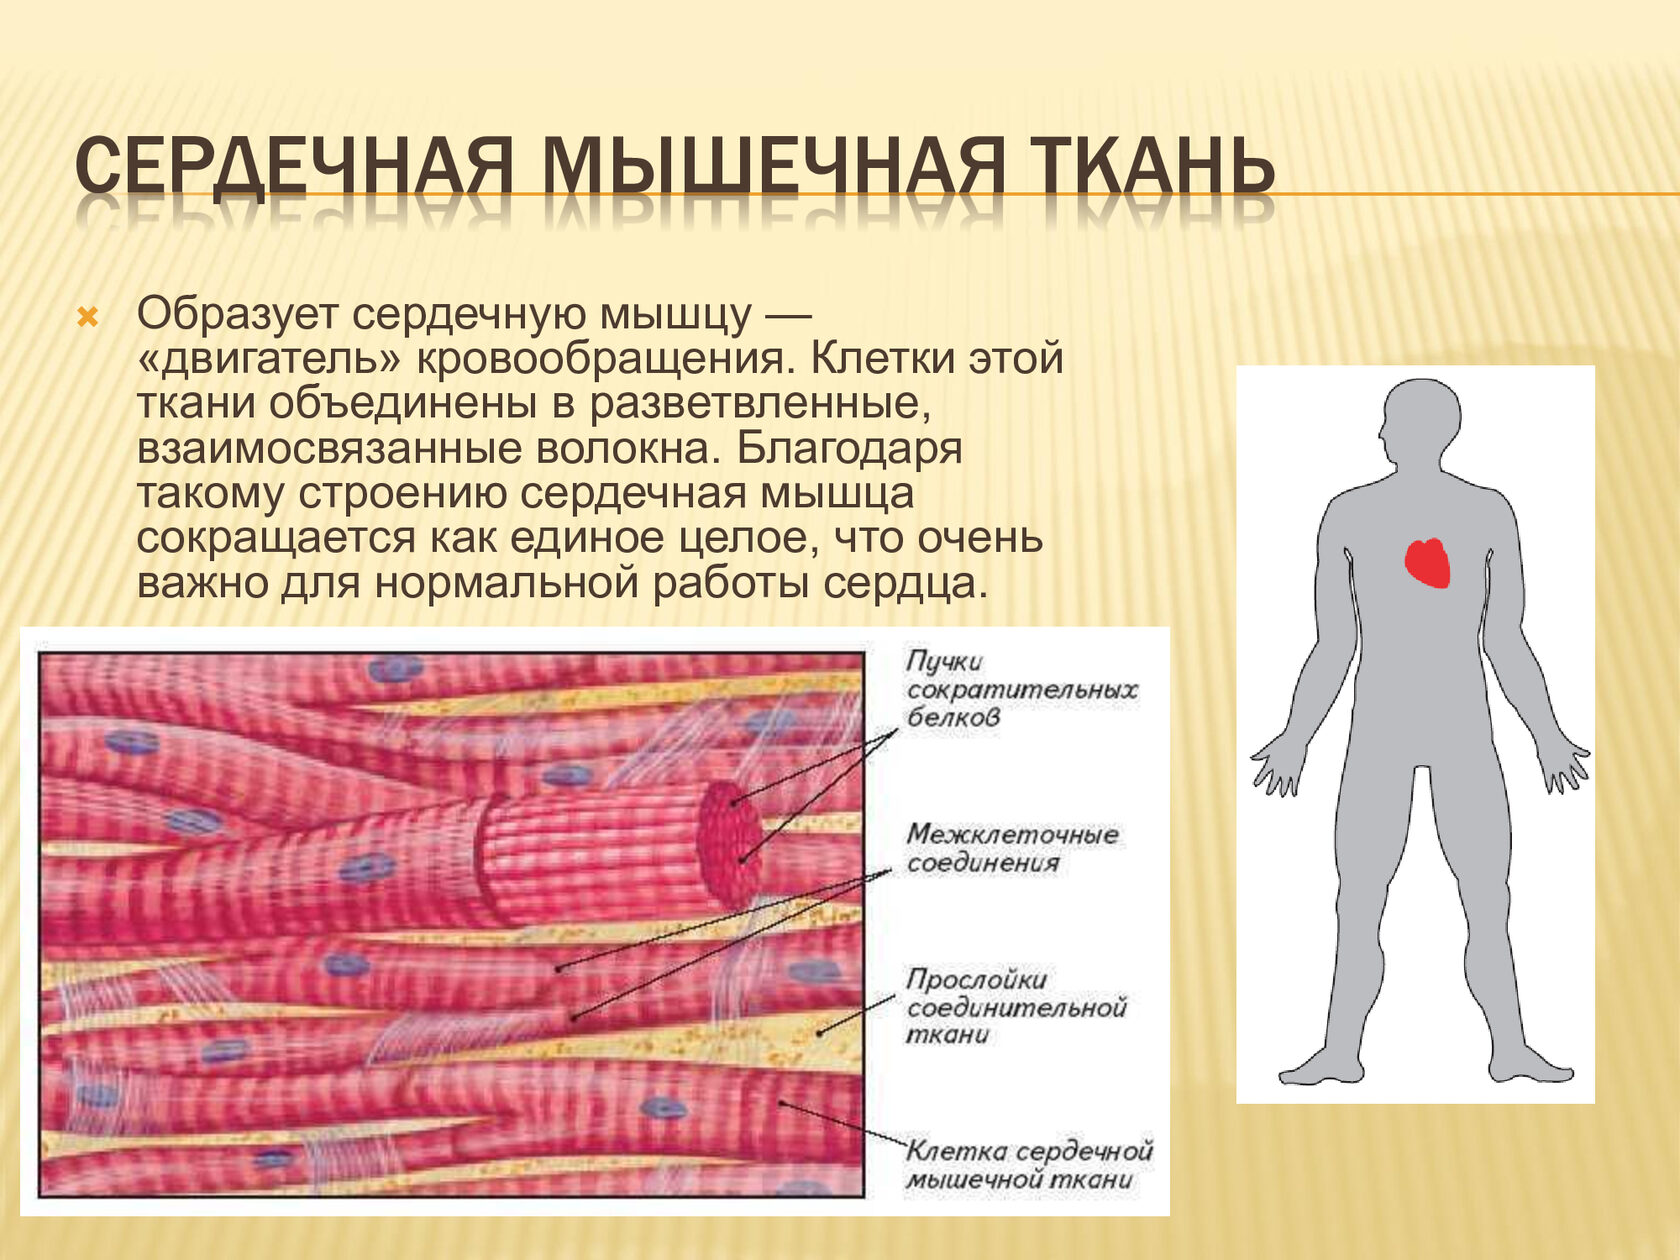 Какими свойствами обладает клетки мышечной ткани. Строение сердечной мышечной ткани. Сердечная мышечная ткань особенности строения. Сердечной поперечнополосатой мышечной ткани.